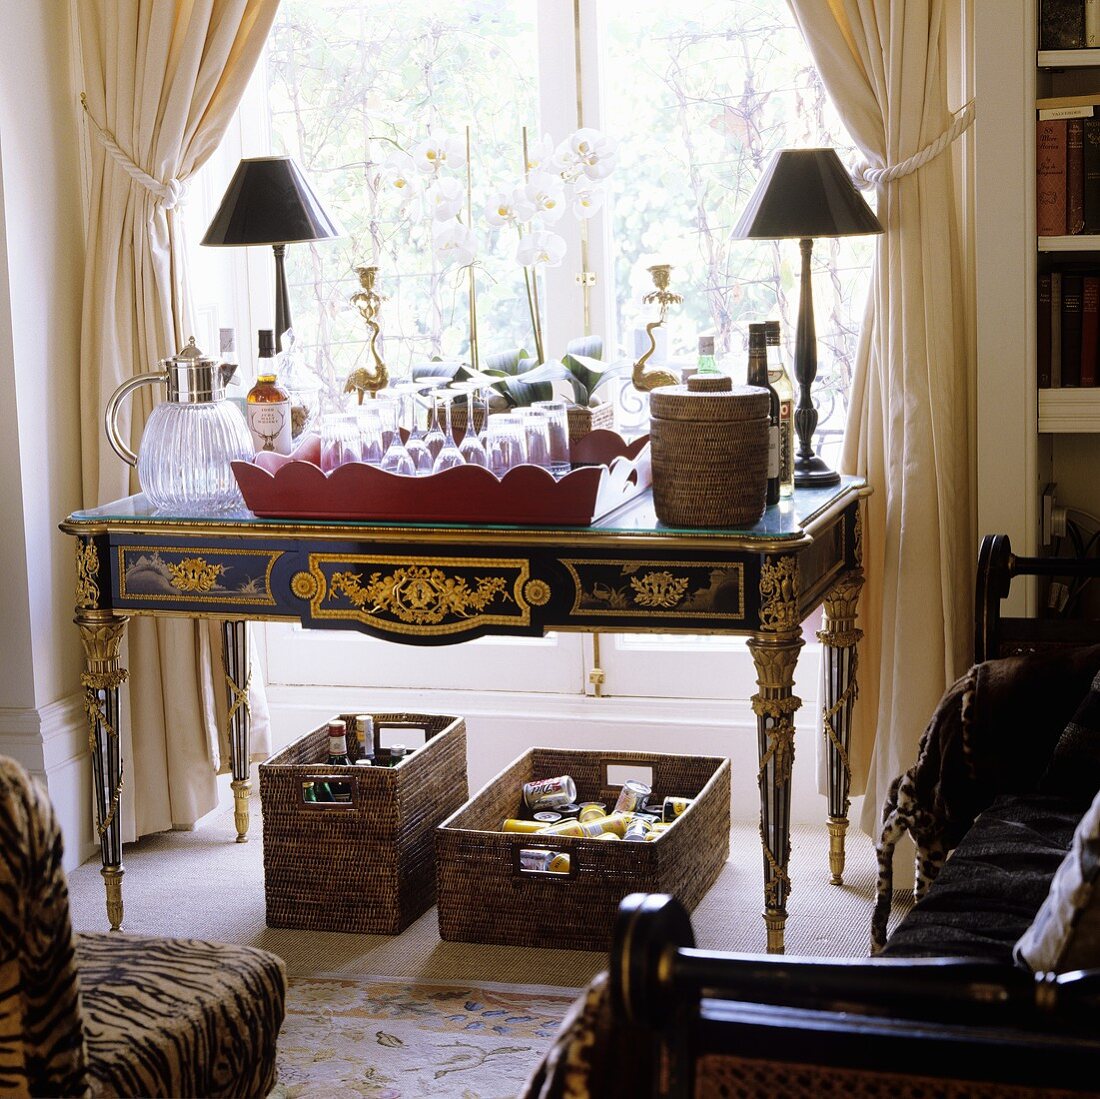 Barocker Tisch mit Gläsern auf Tablett darunter Hausbar in Körben vor raumhohem Fenster